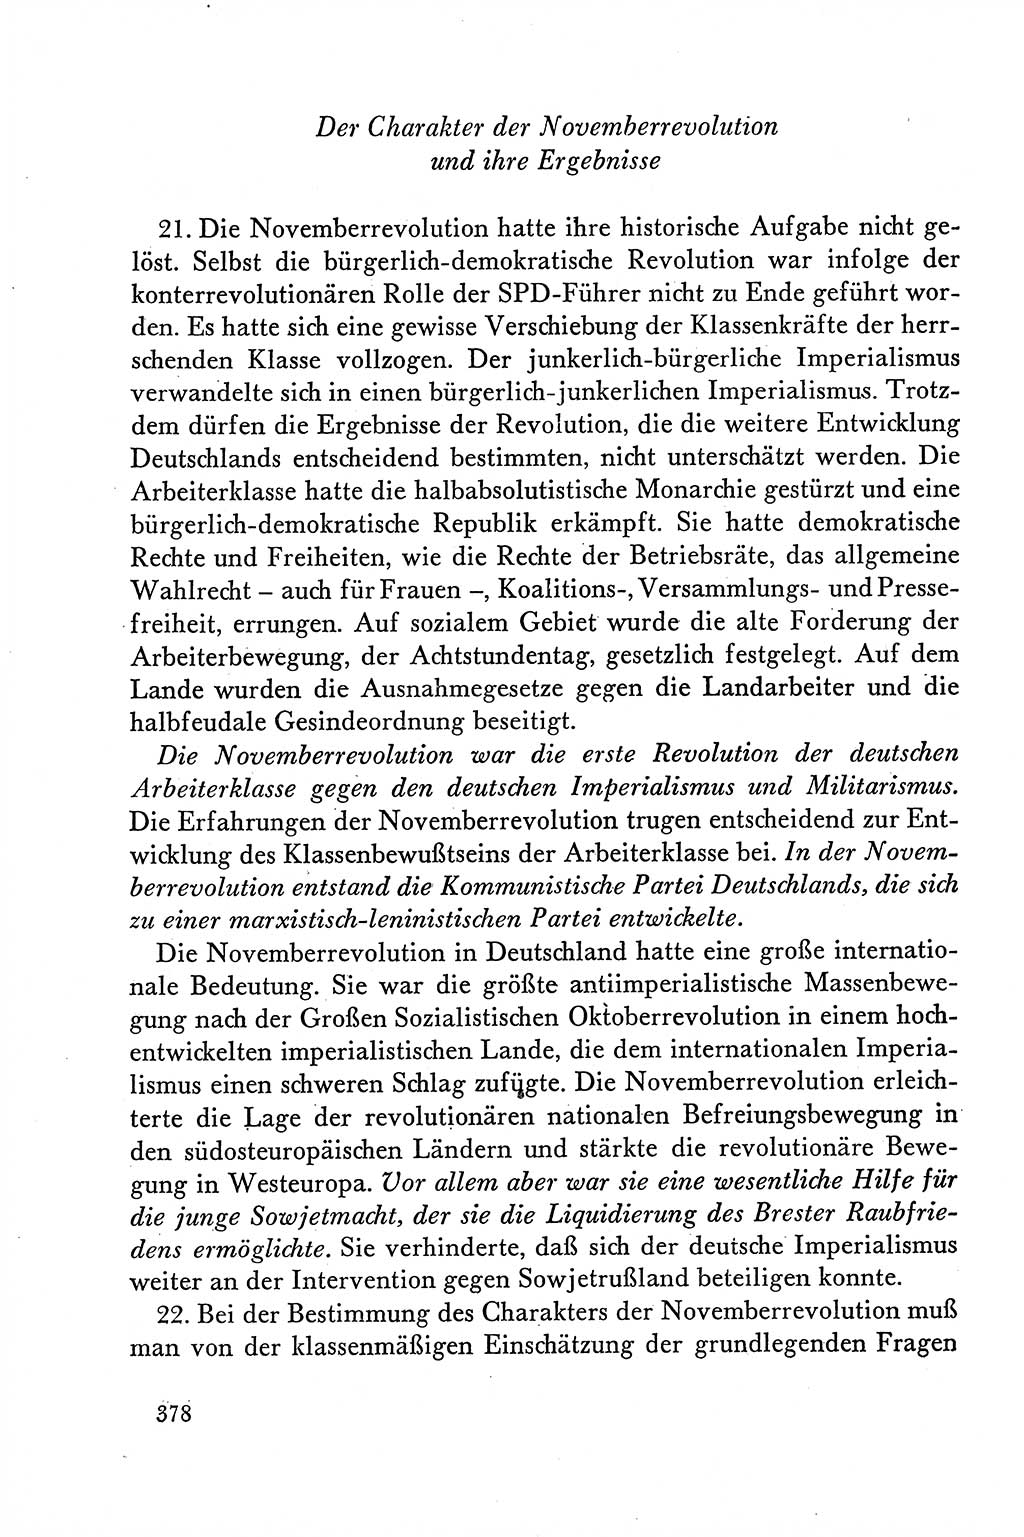 Dokumente der Sozialistischen Einheitspartei Deutschlands (SED) [Deutsche Demokratische Republik (DDR)] 1958-1959, Seite 378 (Dok. SED DDR 1958-1959, S. 378)